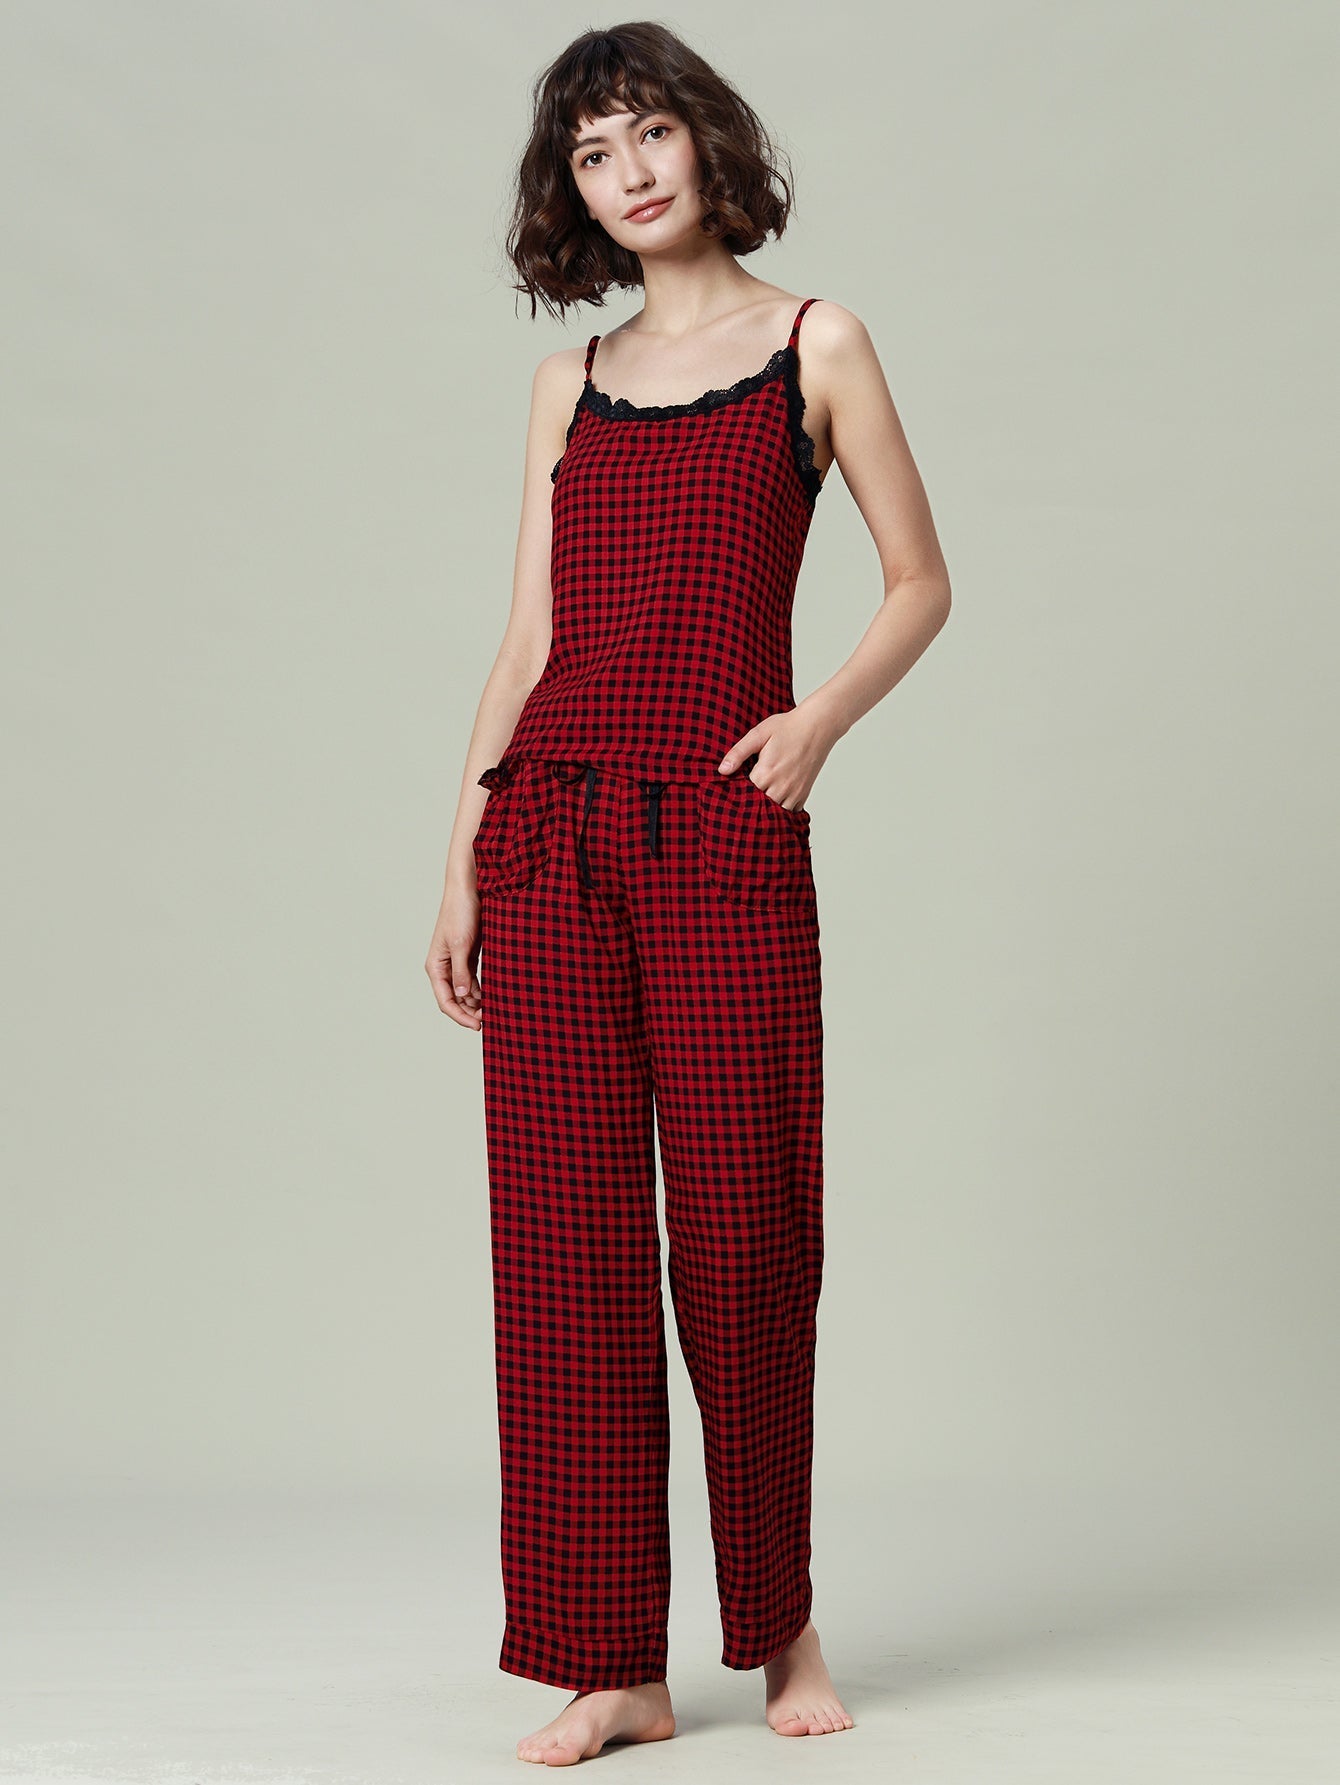 Womens Pajamas Set Cami Top and Capris Pants Sleepwear Pjs Set S-XL Sai Feel